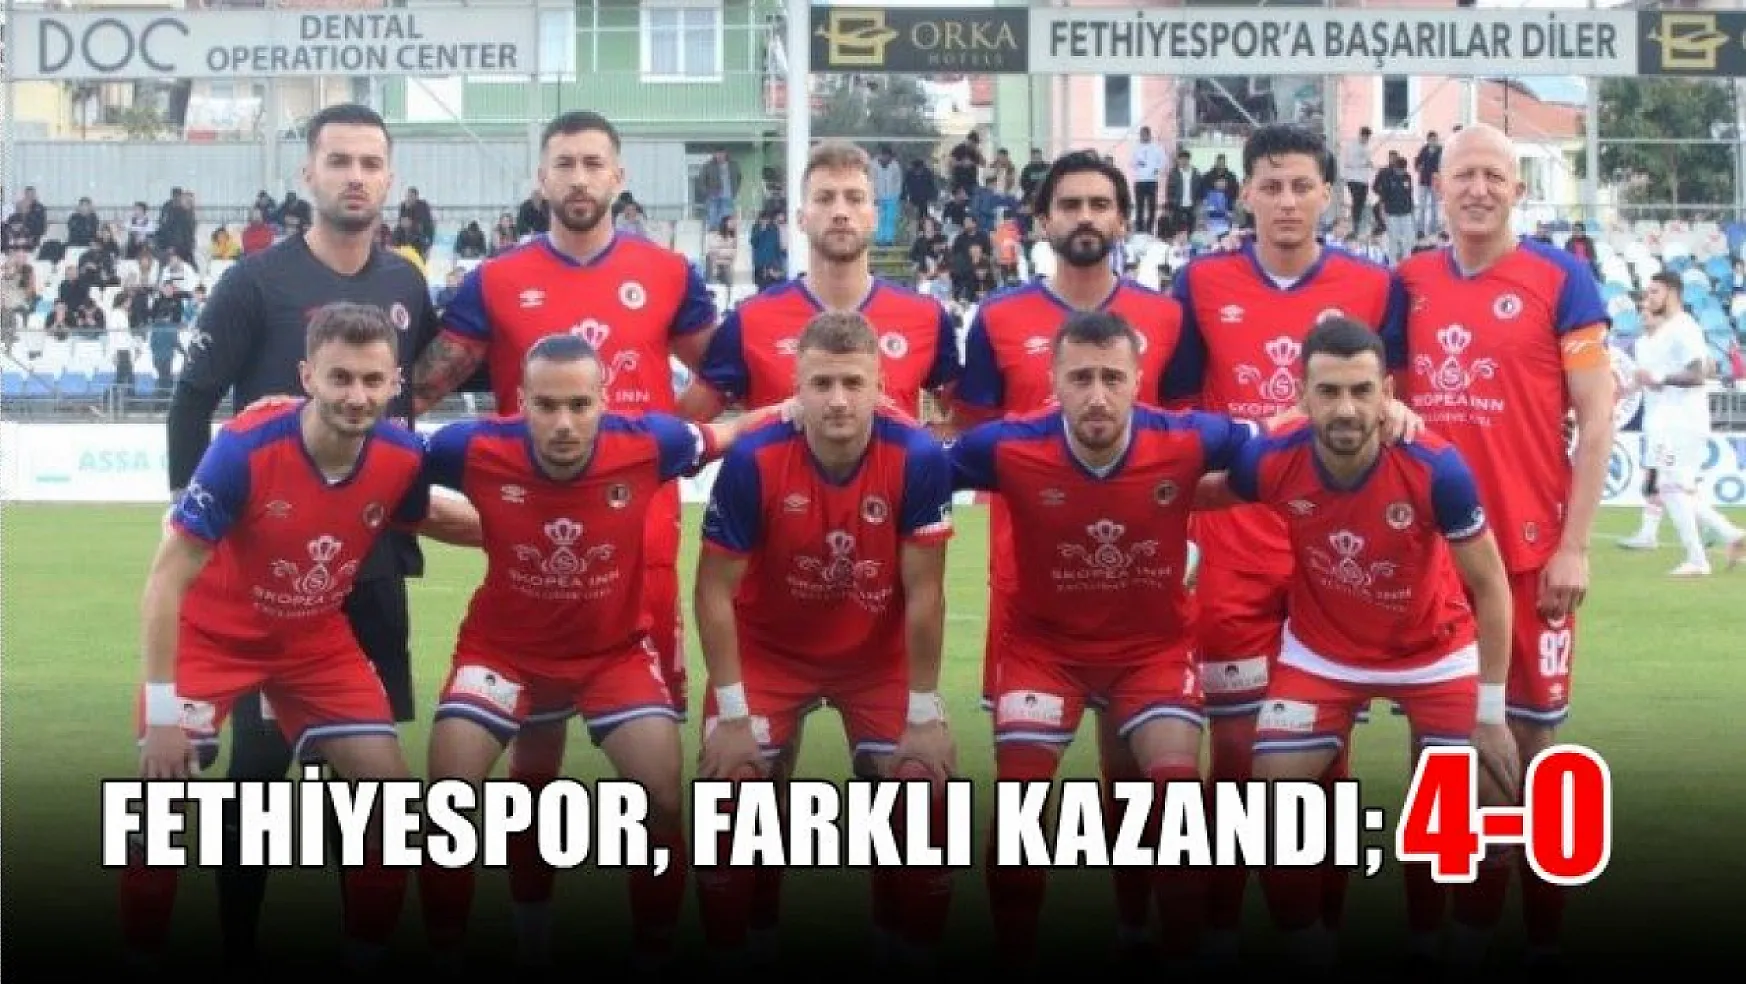 Fethiyespor, farklı kazandı 4-0